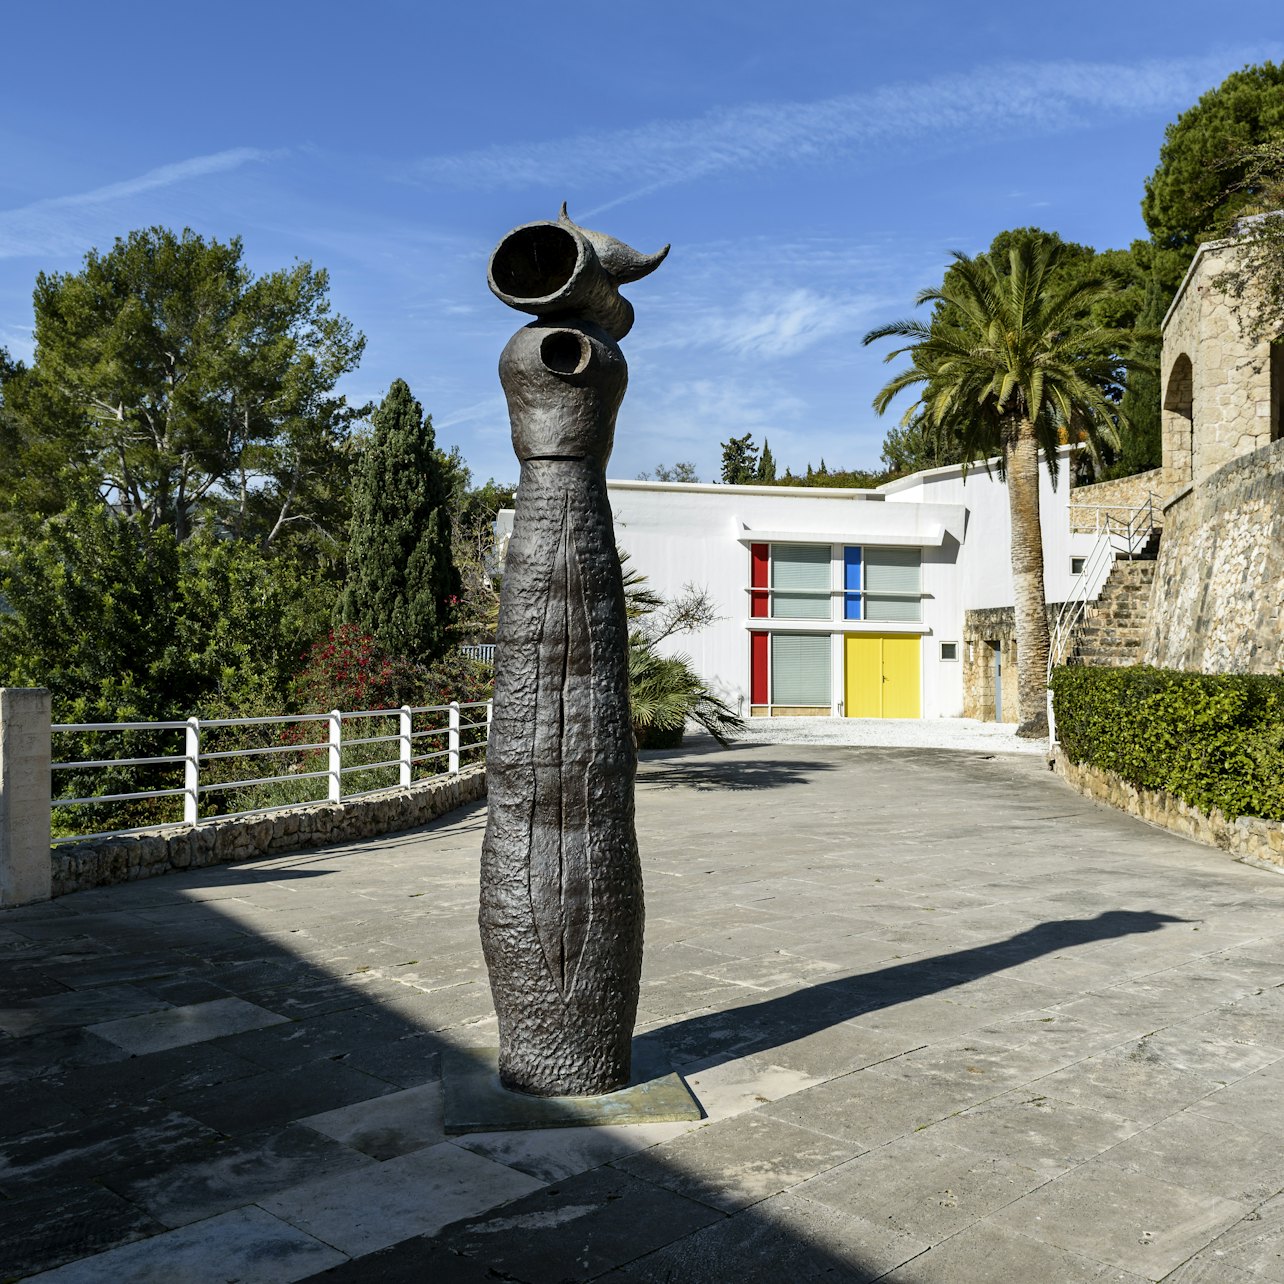 Fundació Miró Mallorca - Accommodations in Palma de Mallorca